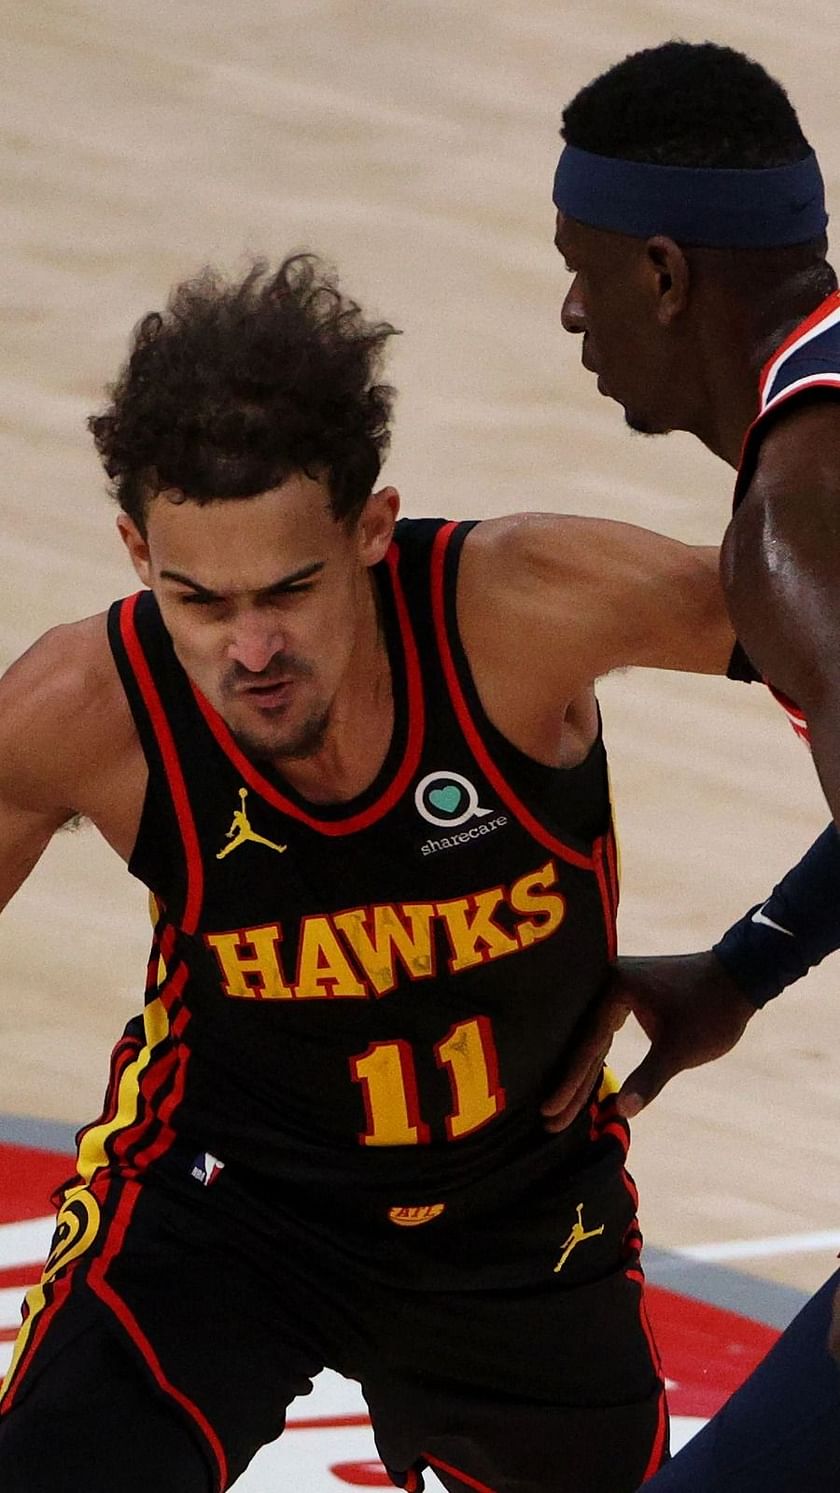 Atlanta Hawks record by jersey in 2020-21 NBA season